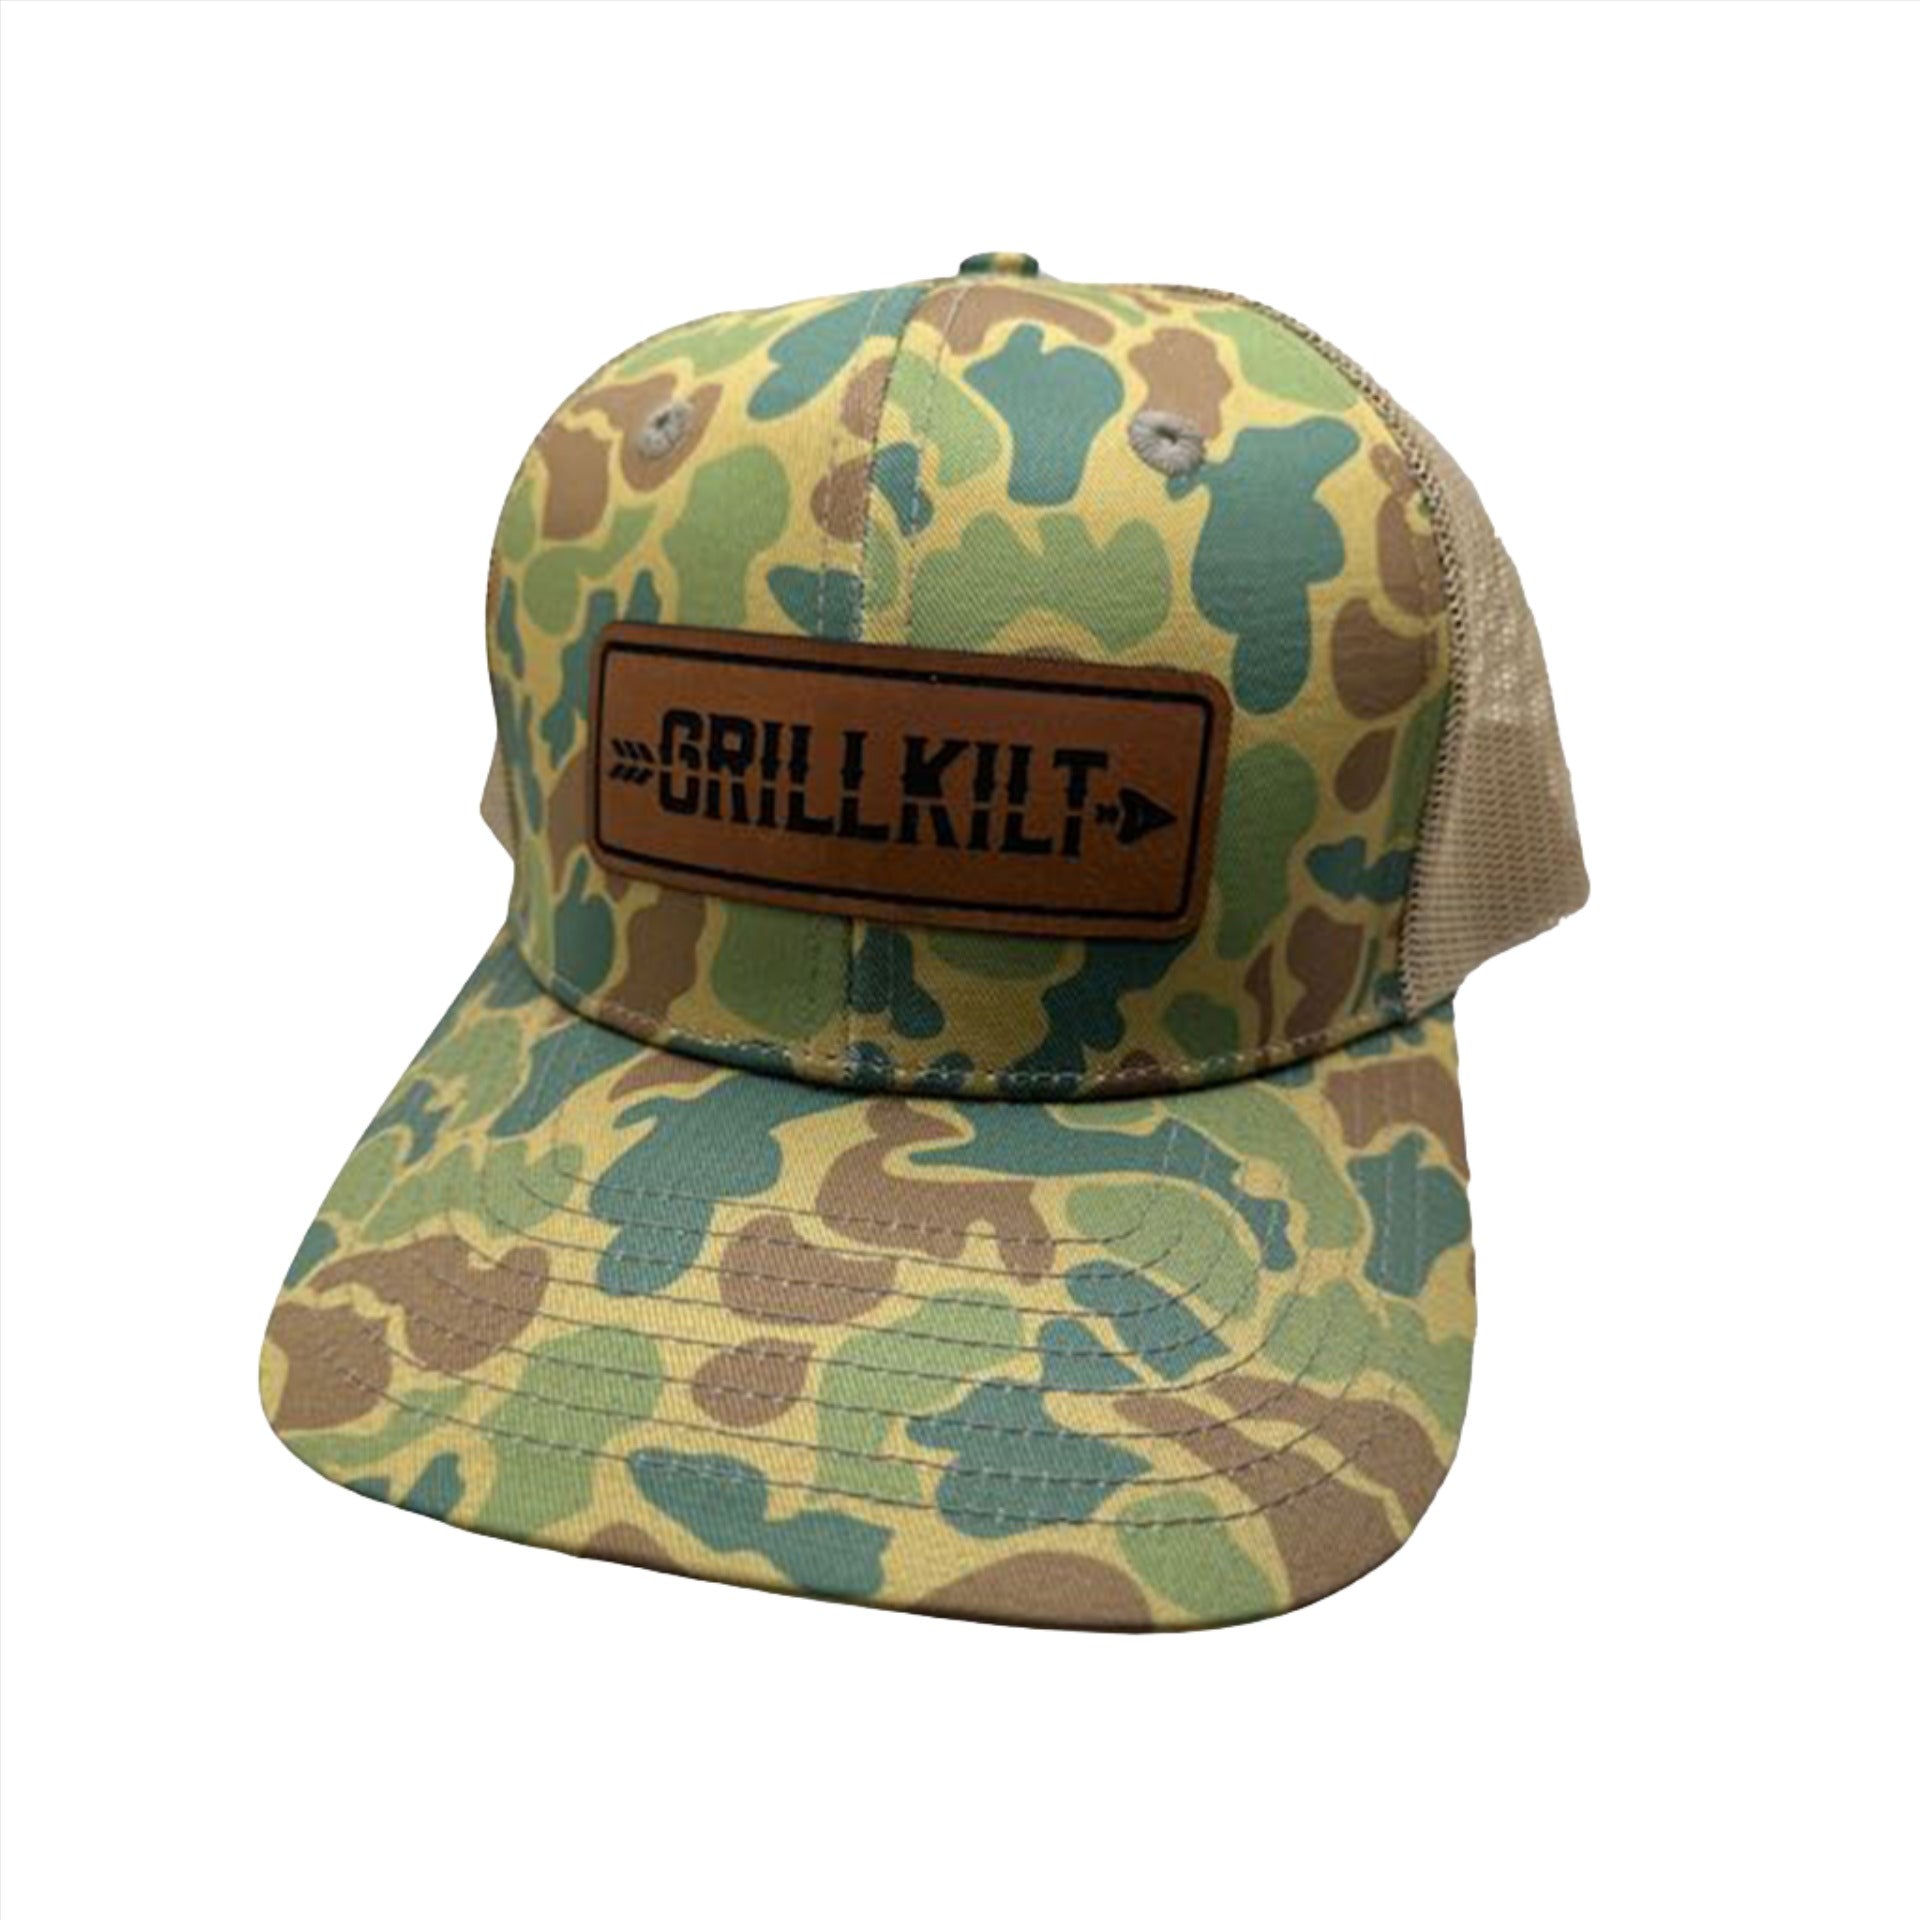 GrillKilt-hat-vintage-camo